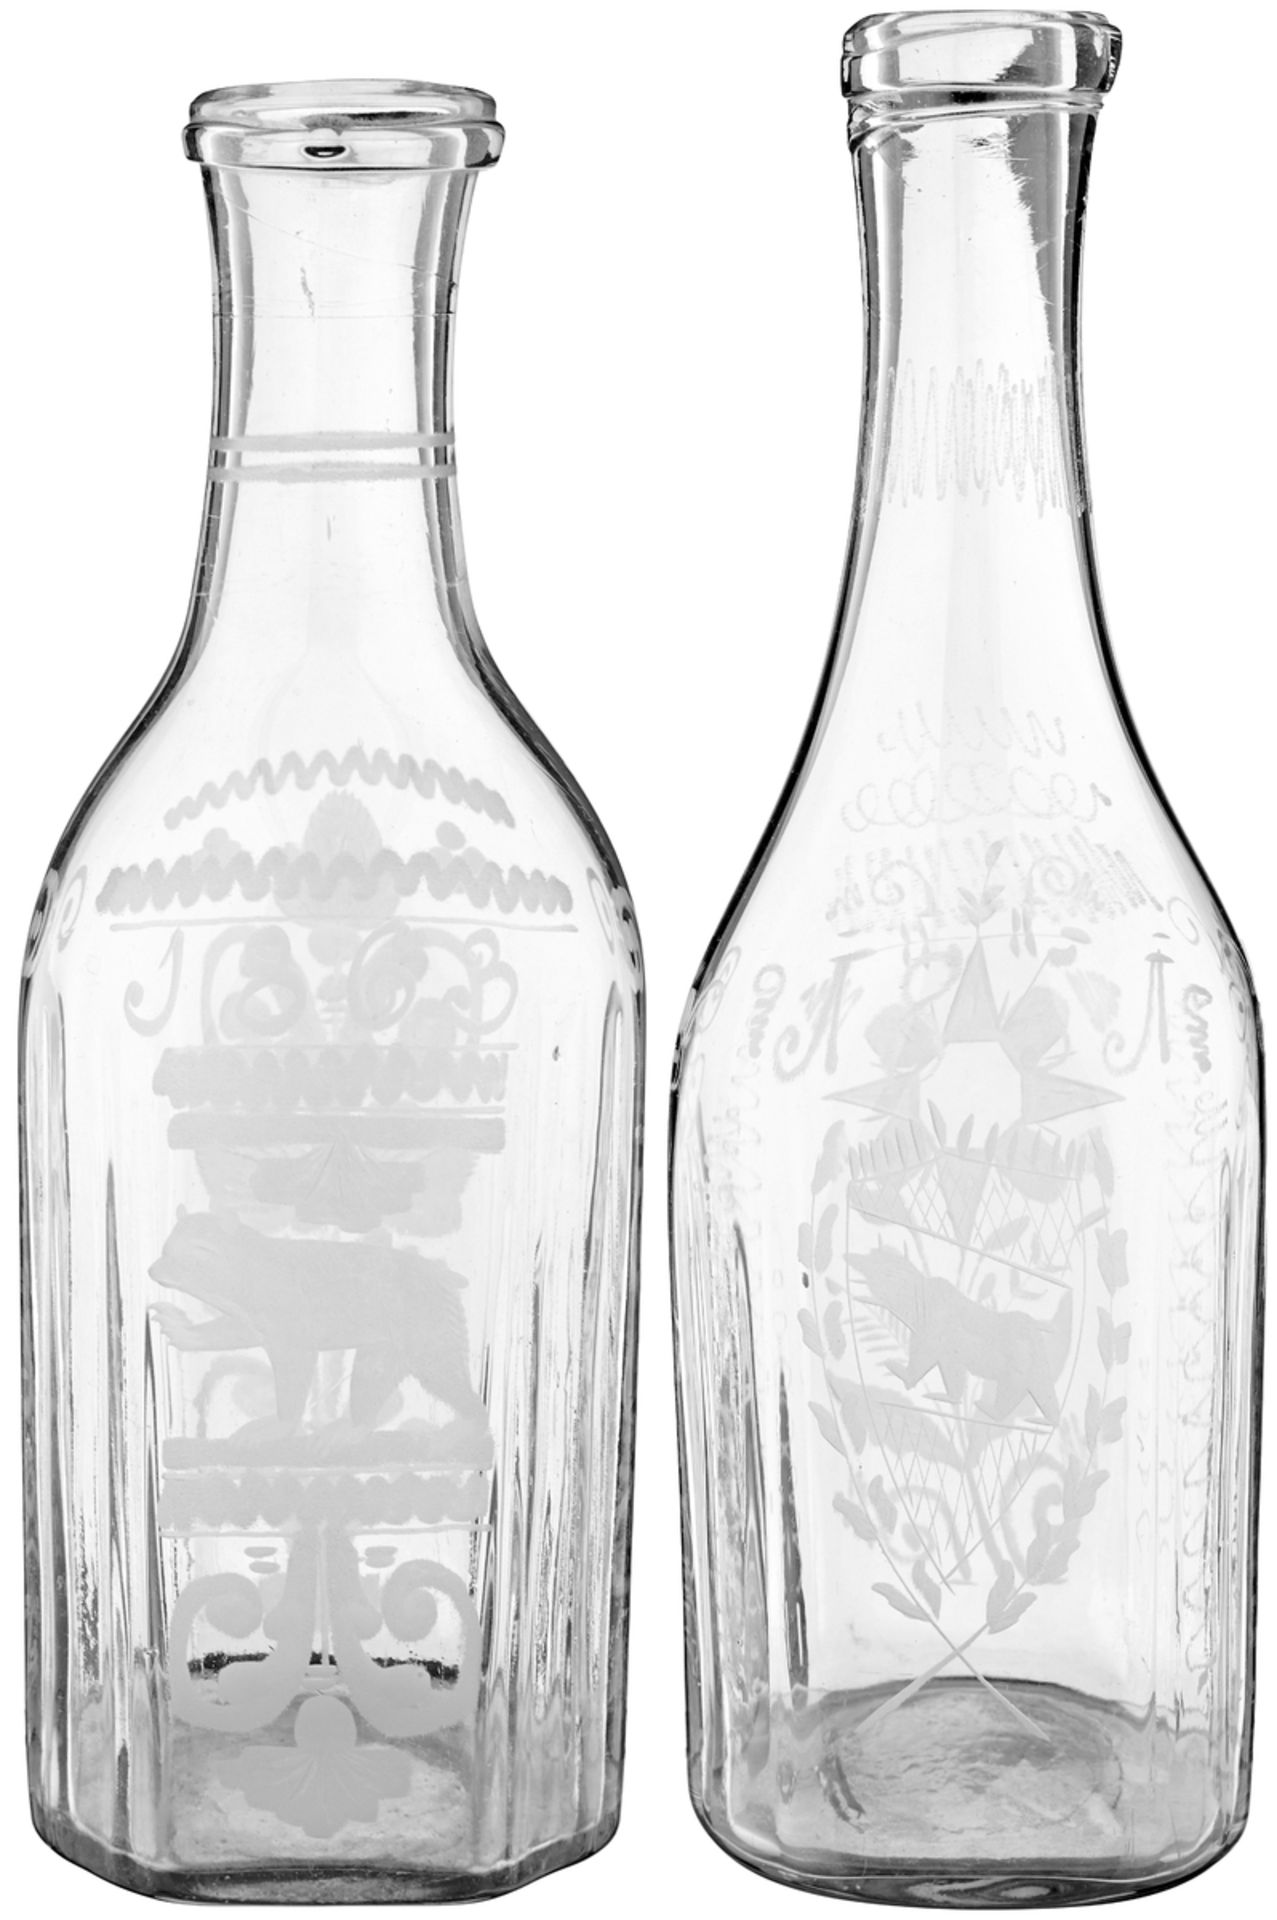 2 MassflaschenWohl Flühli, datiert 1851 und 1863. Farbloses, in die Form geblasenes Glas.